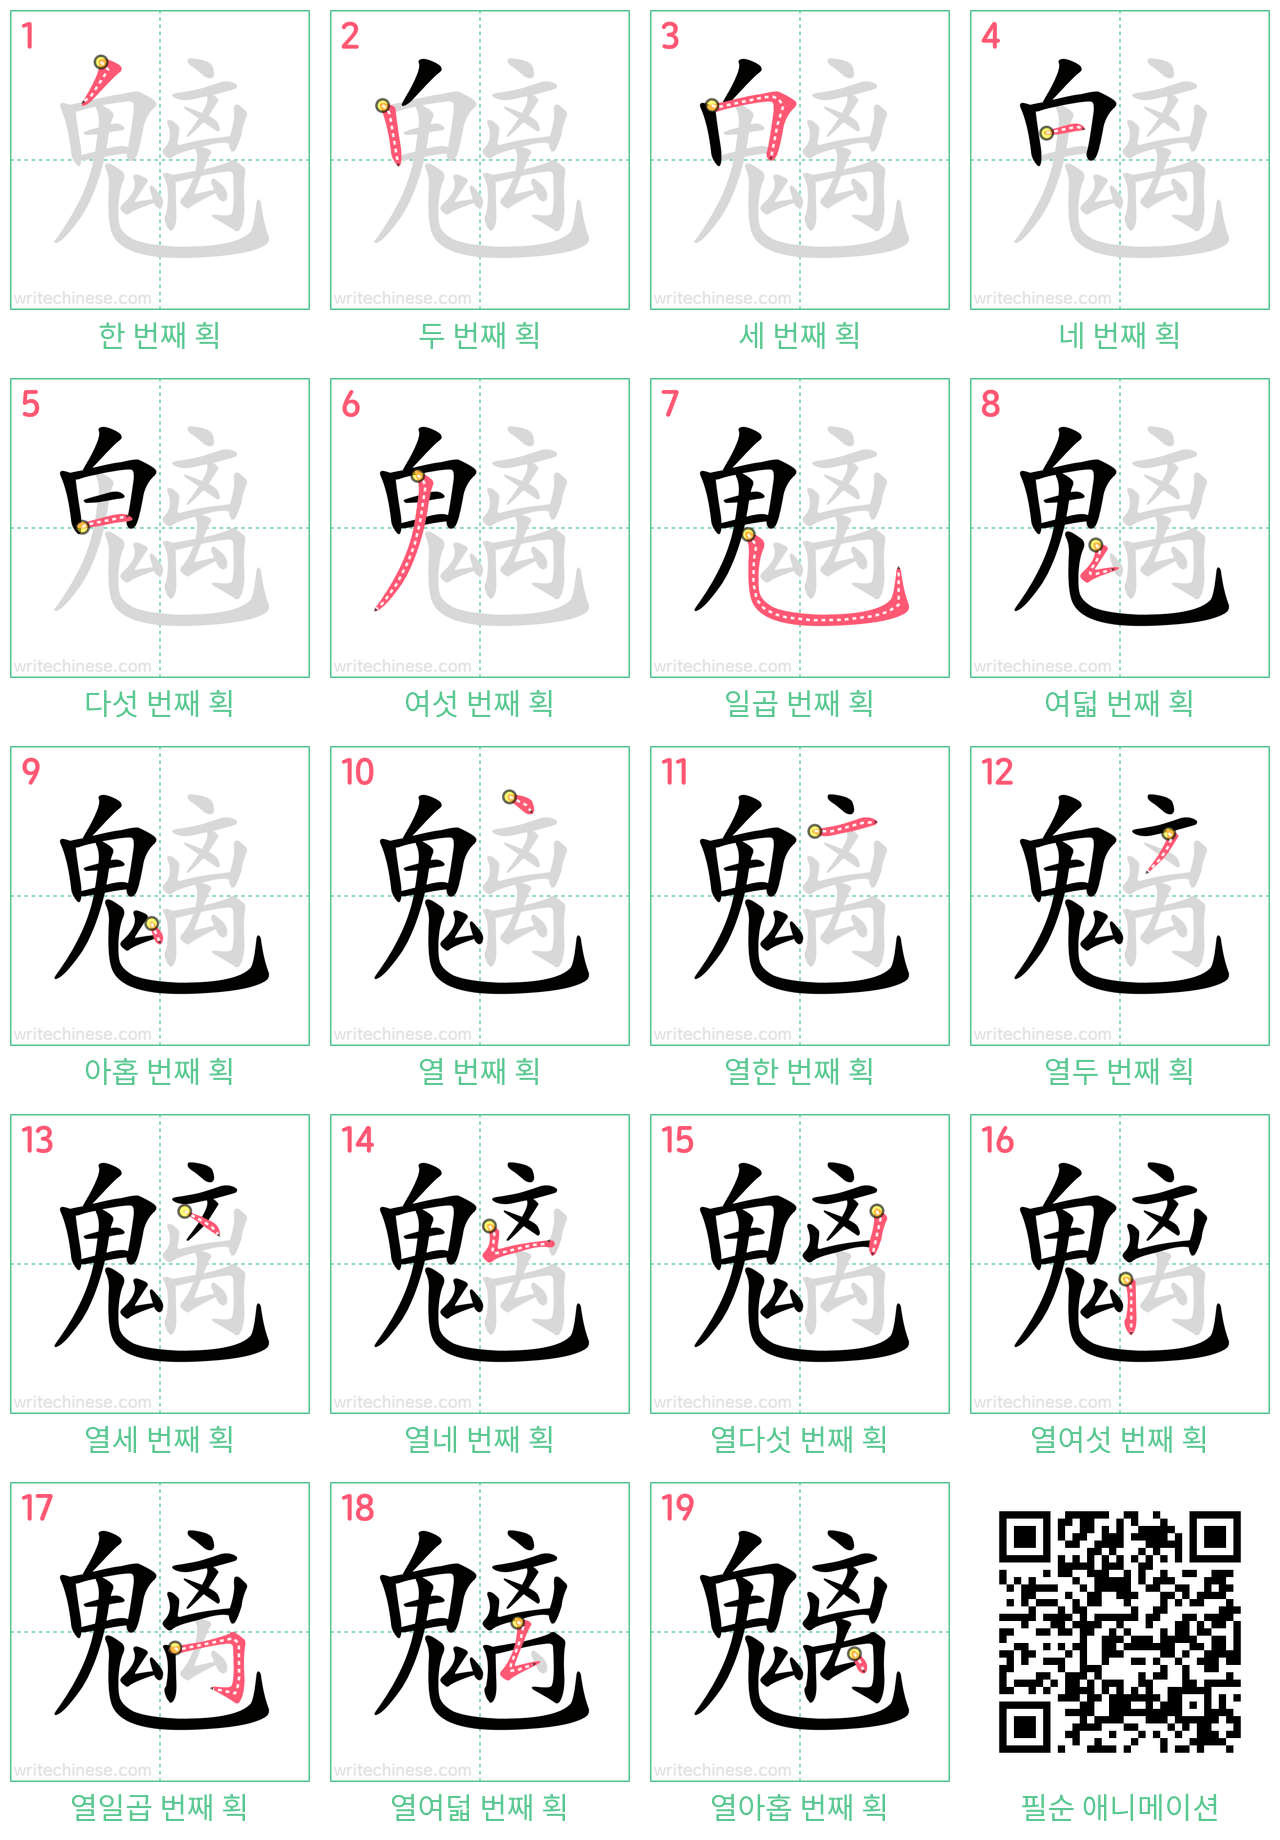 魑 step-by-step stroke order diagrams